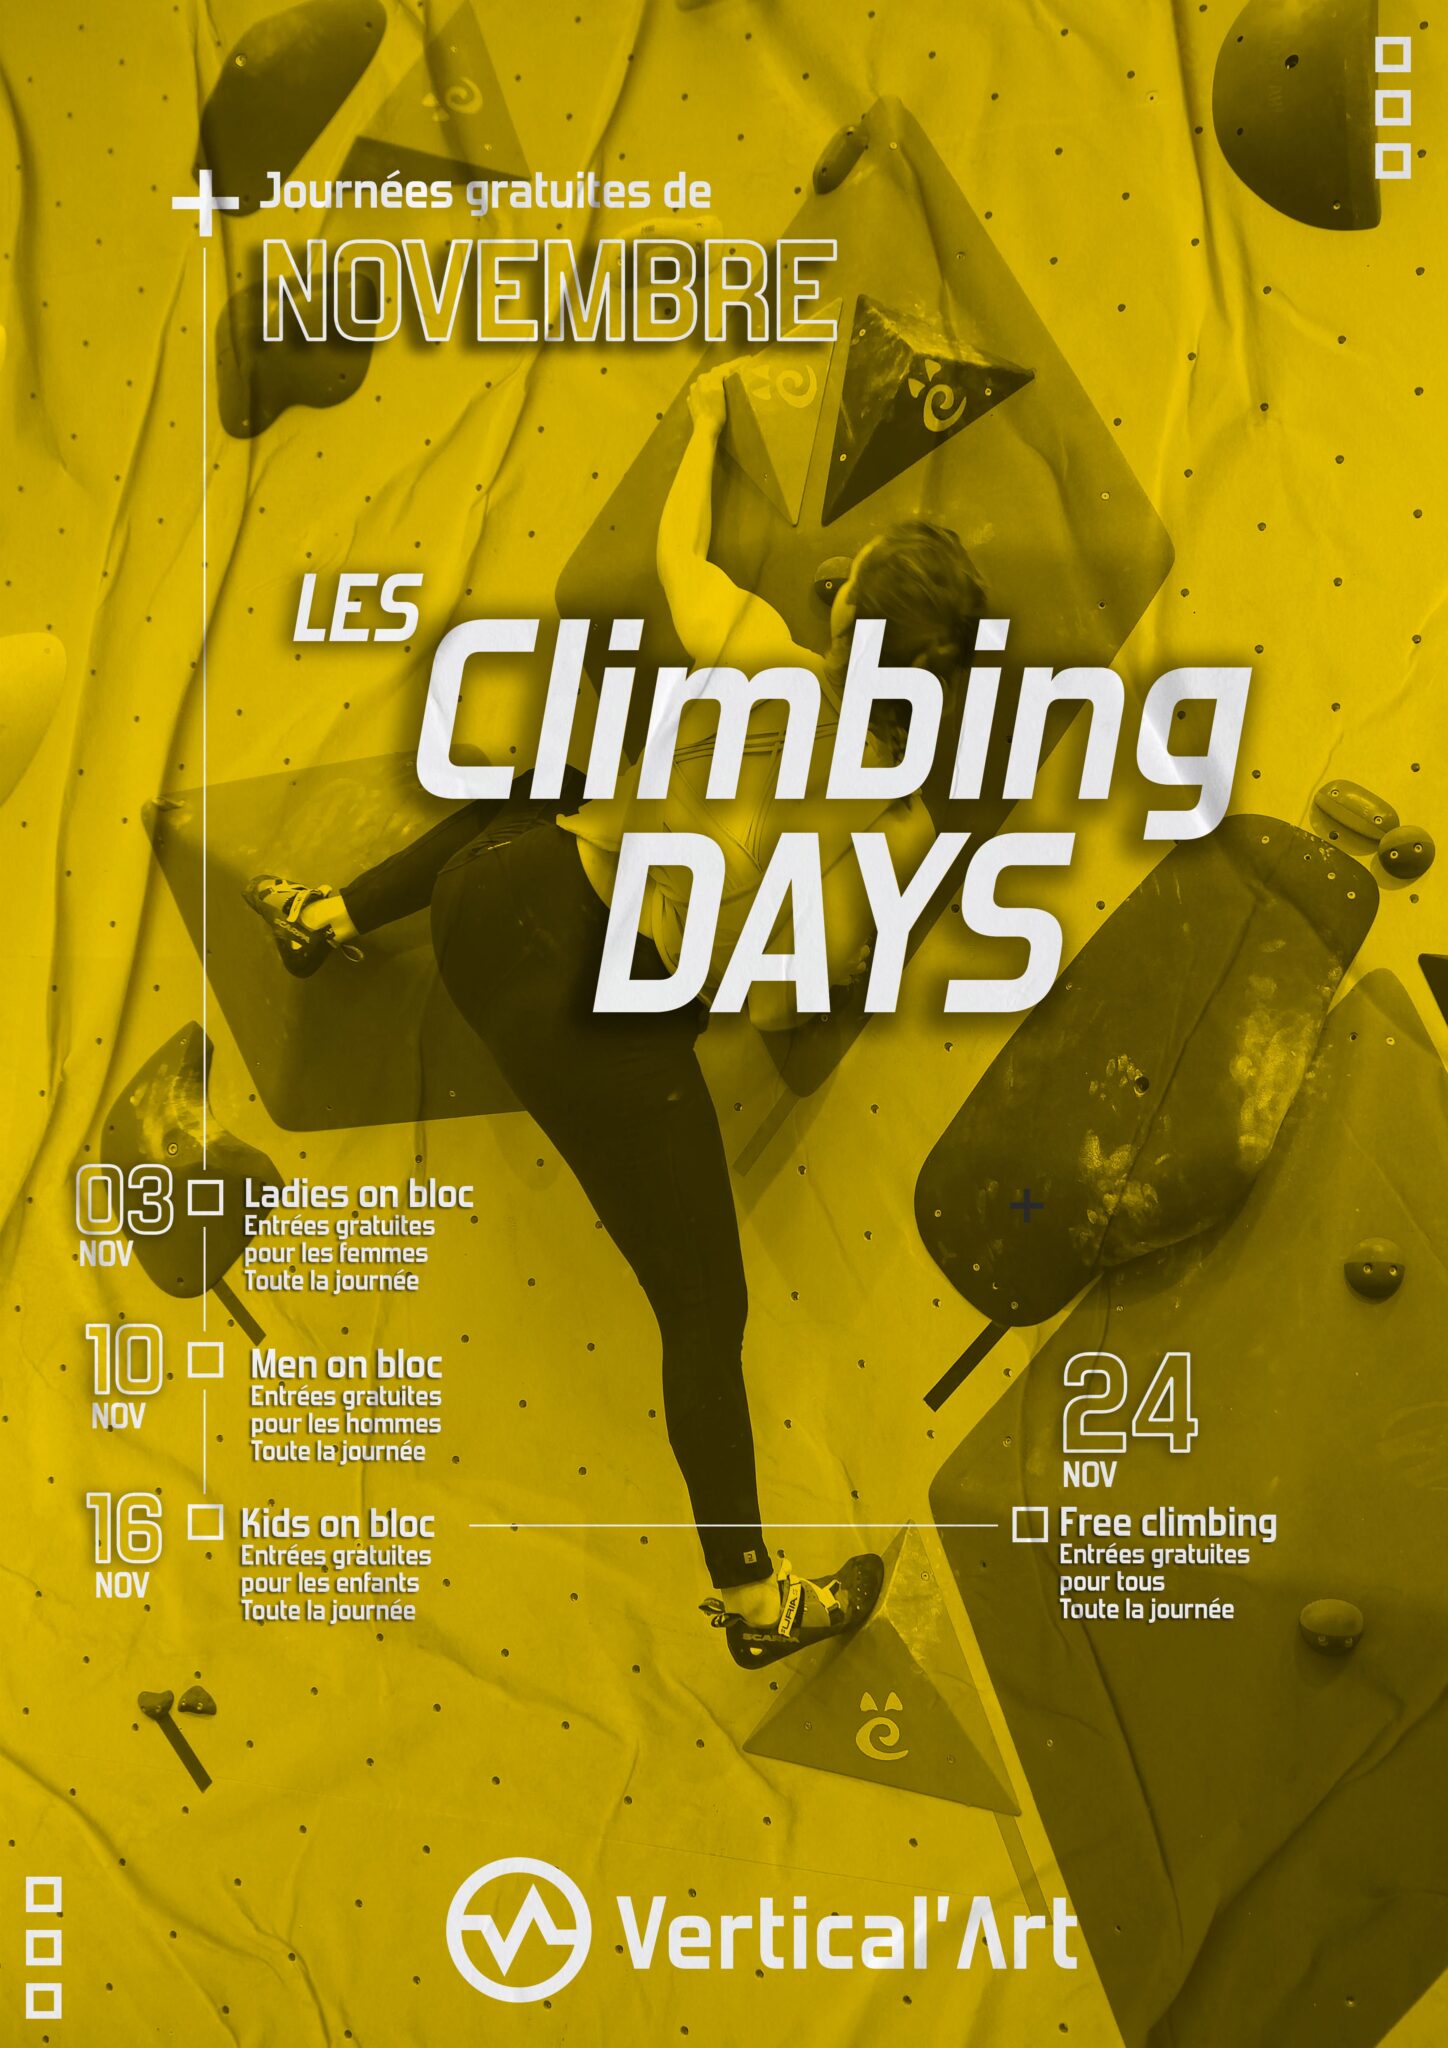 Climbing days à Vertical'Art Rungis Novembre 2022